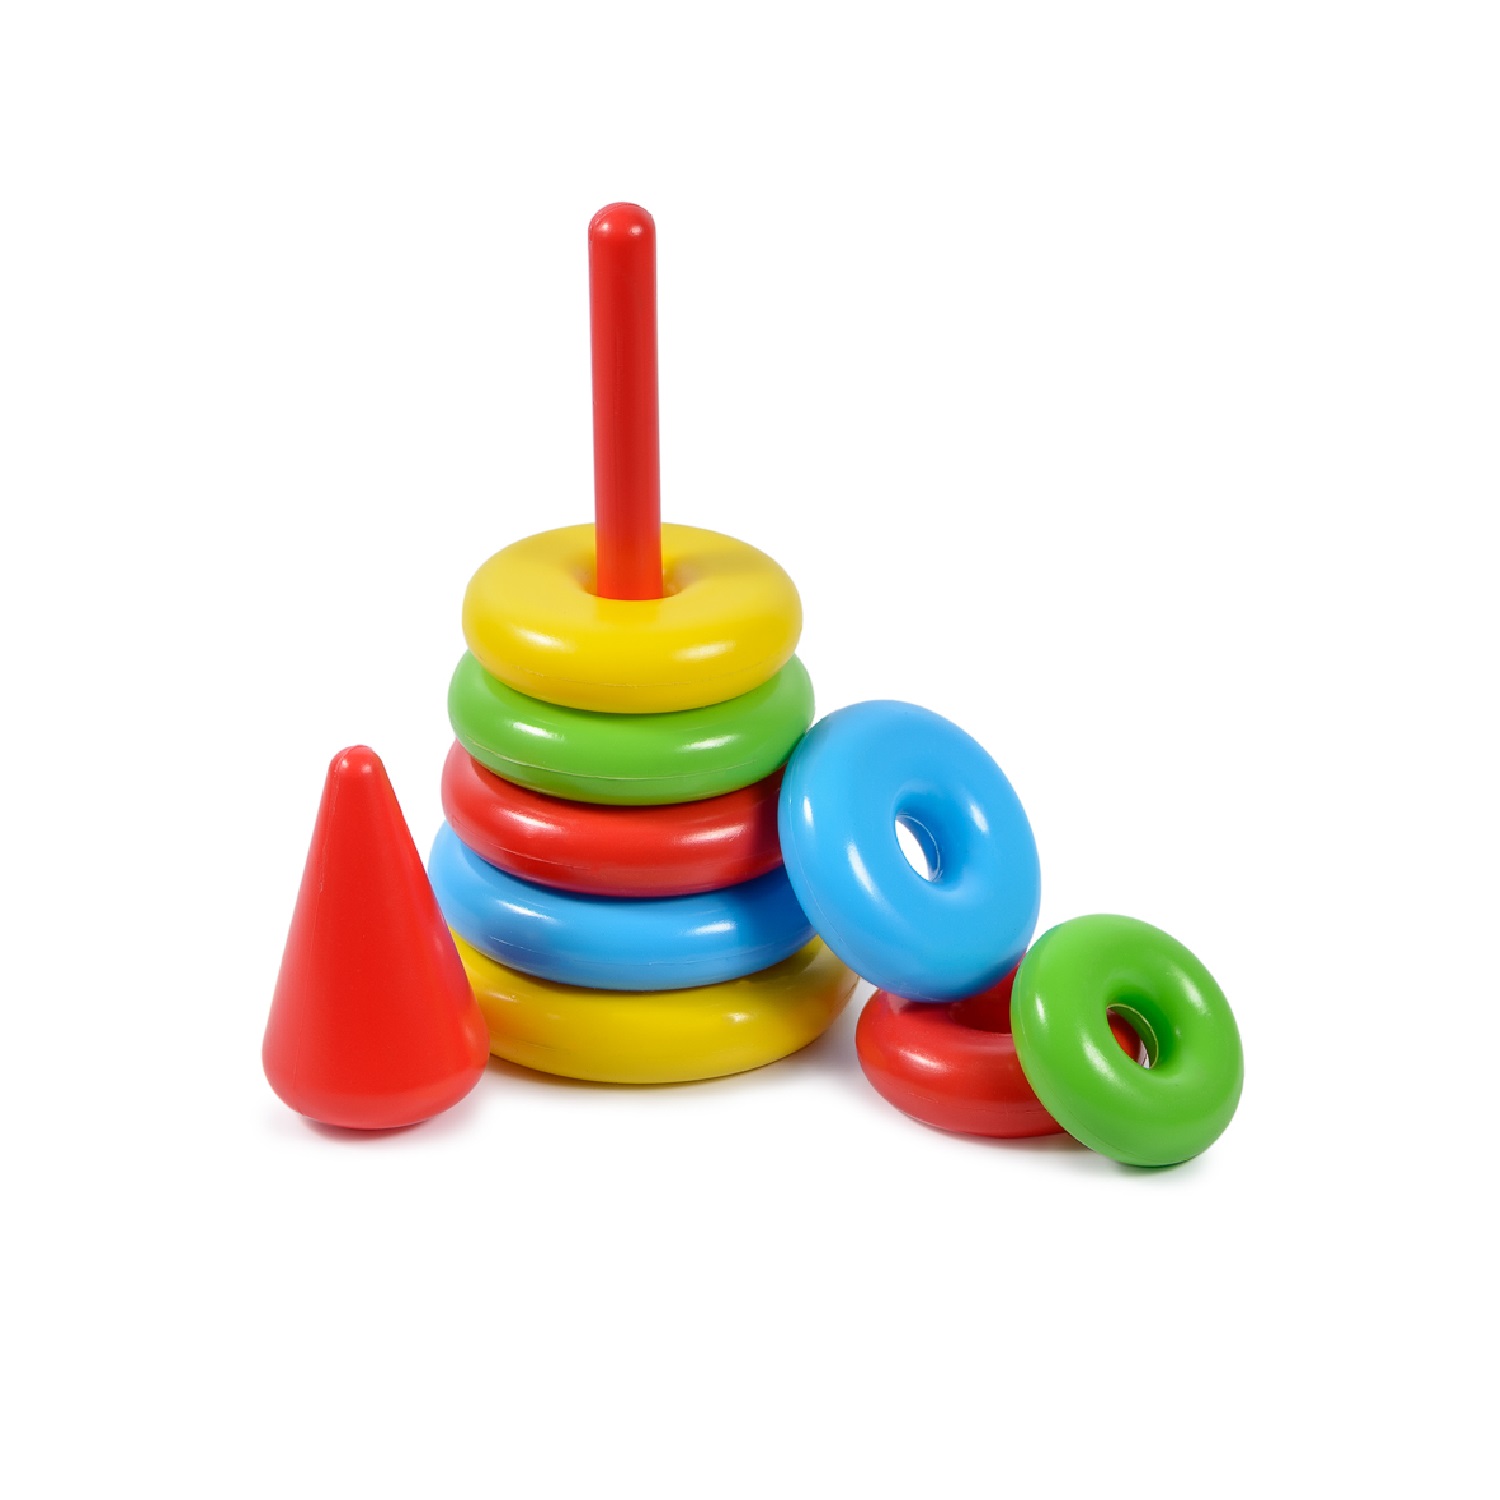 Пирамидка детская развивающая Green Plast 8 колец с наконечником обучающая игрушка - фото 3